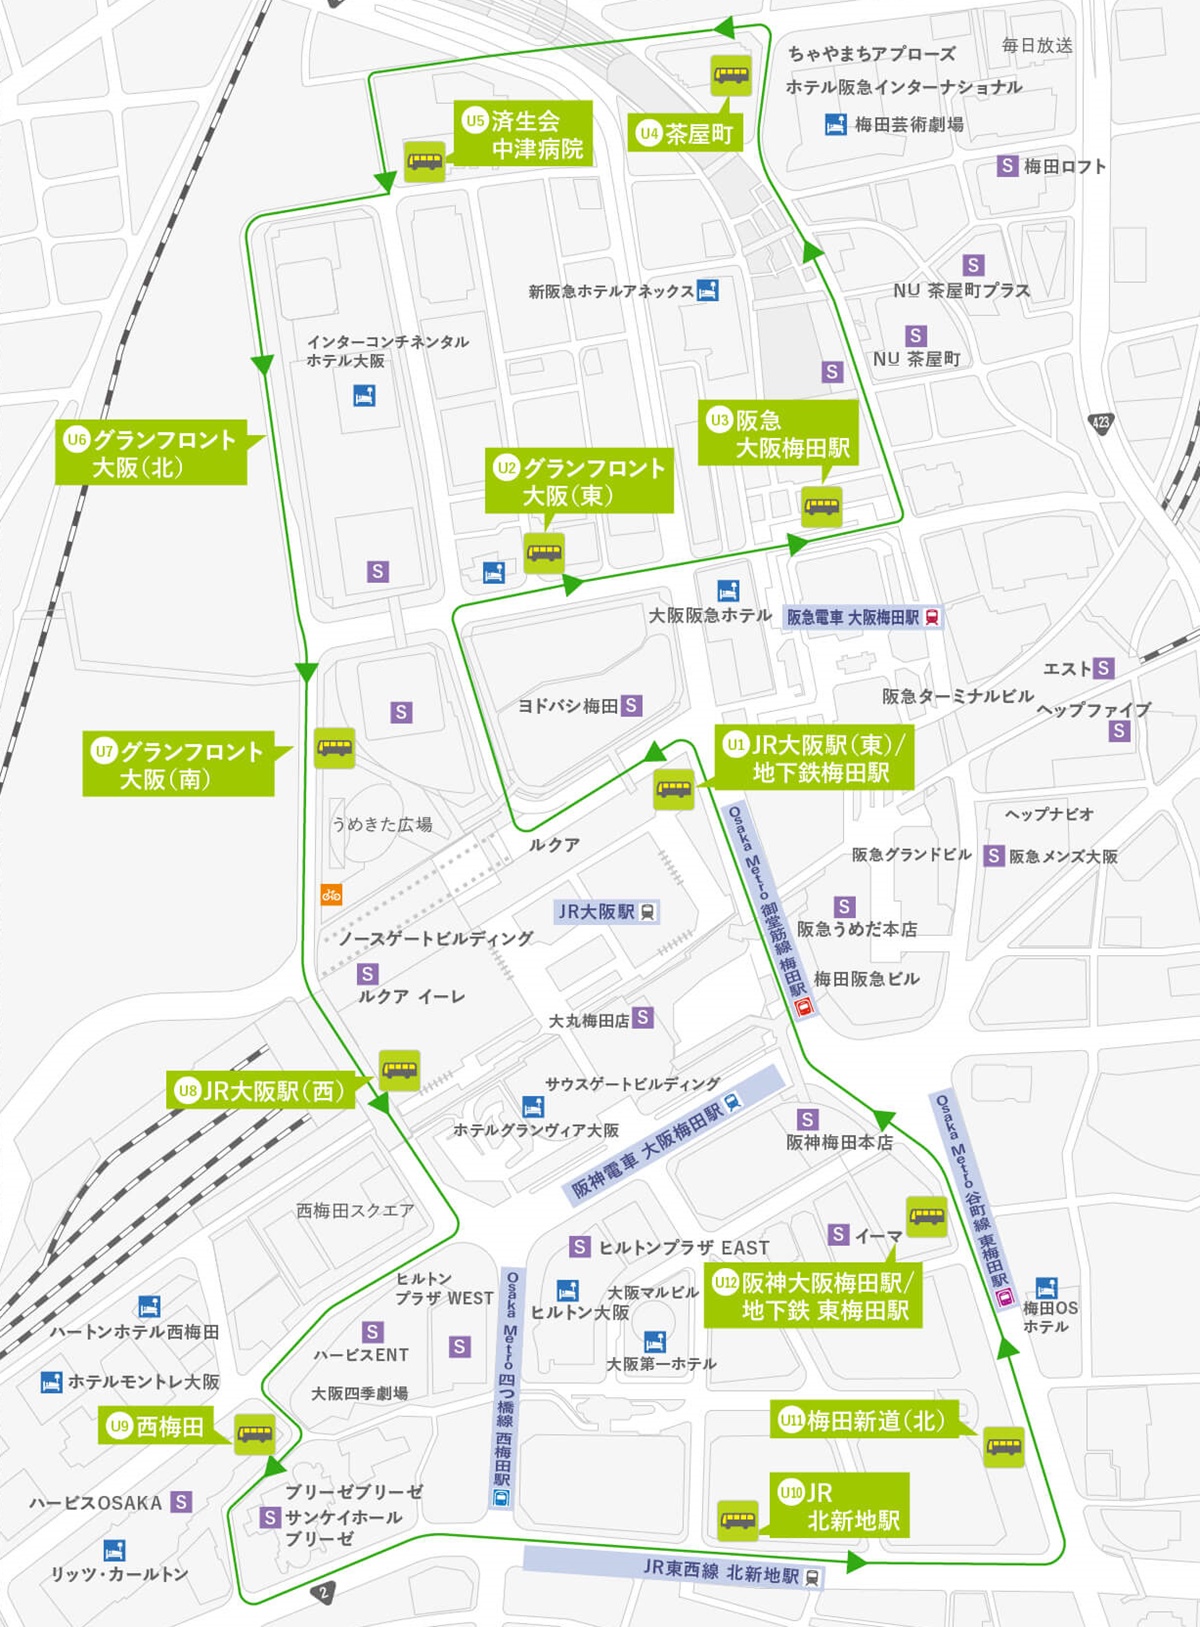 大阪・梅田巡回バス、うめぐるバスのルートと停留所